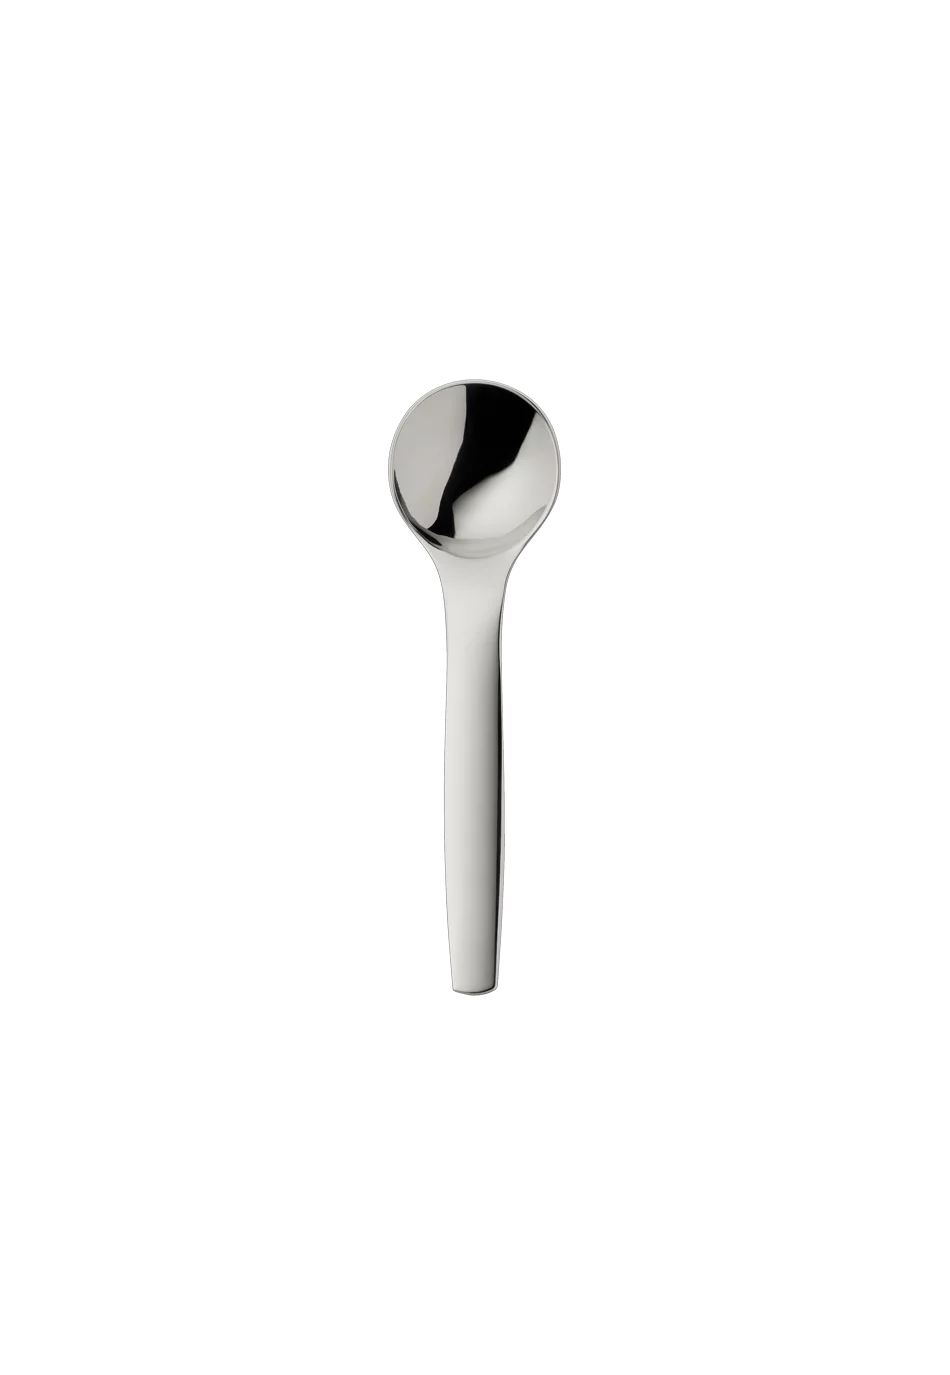 Pax Sugar Spoon (18/8 stainless steel)